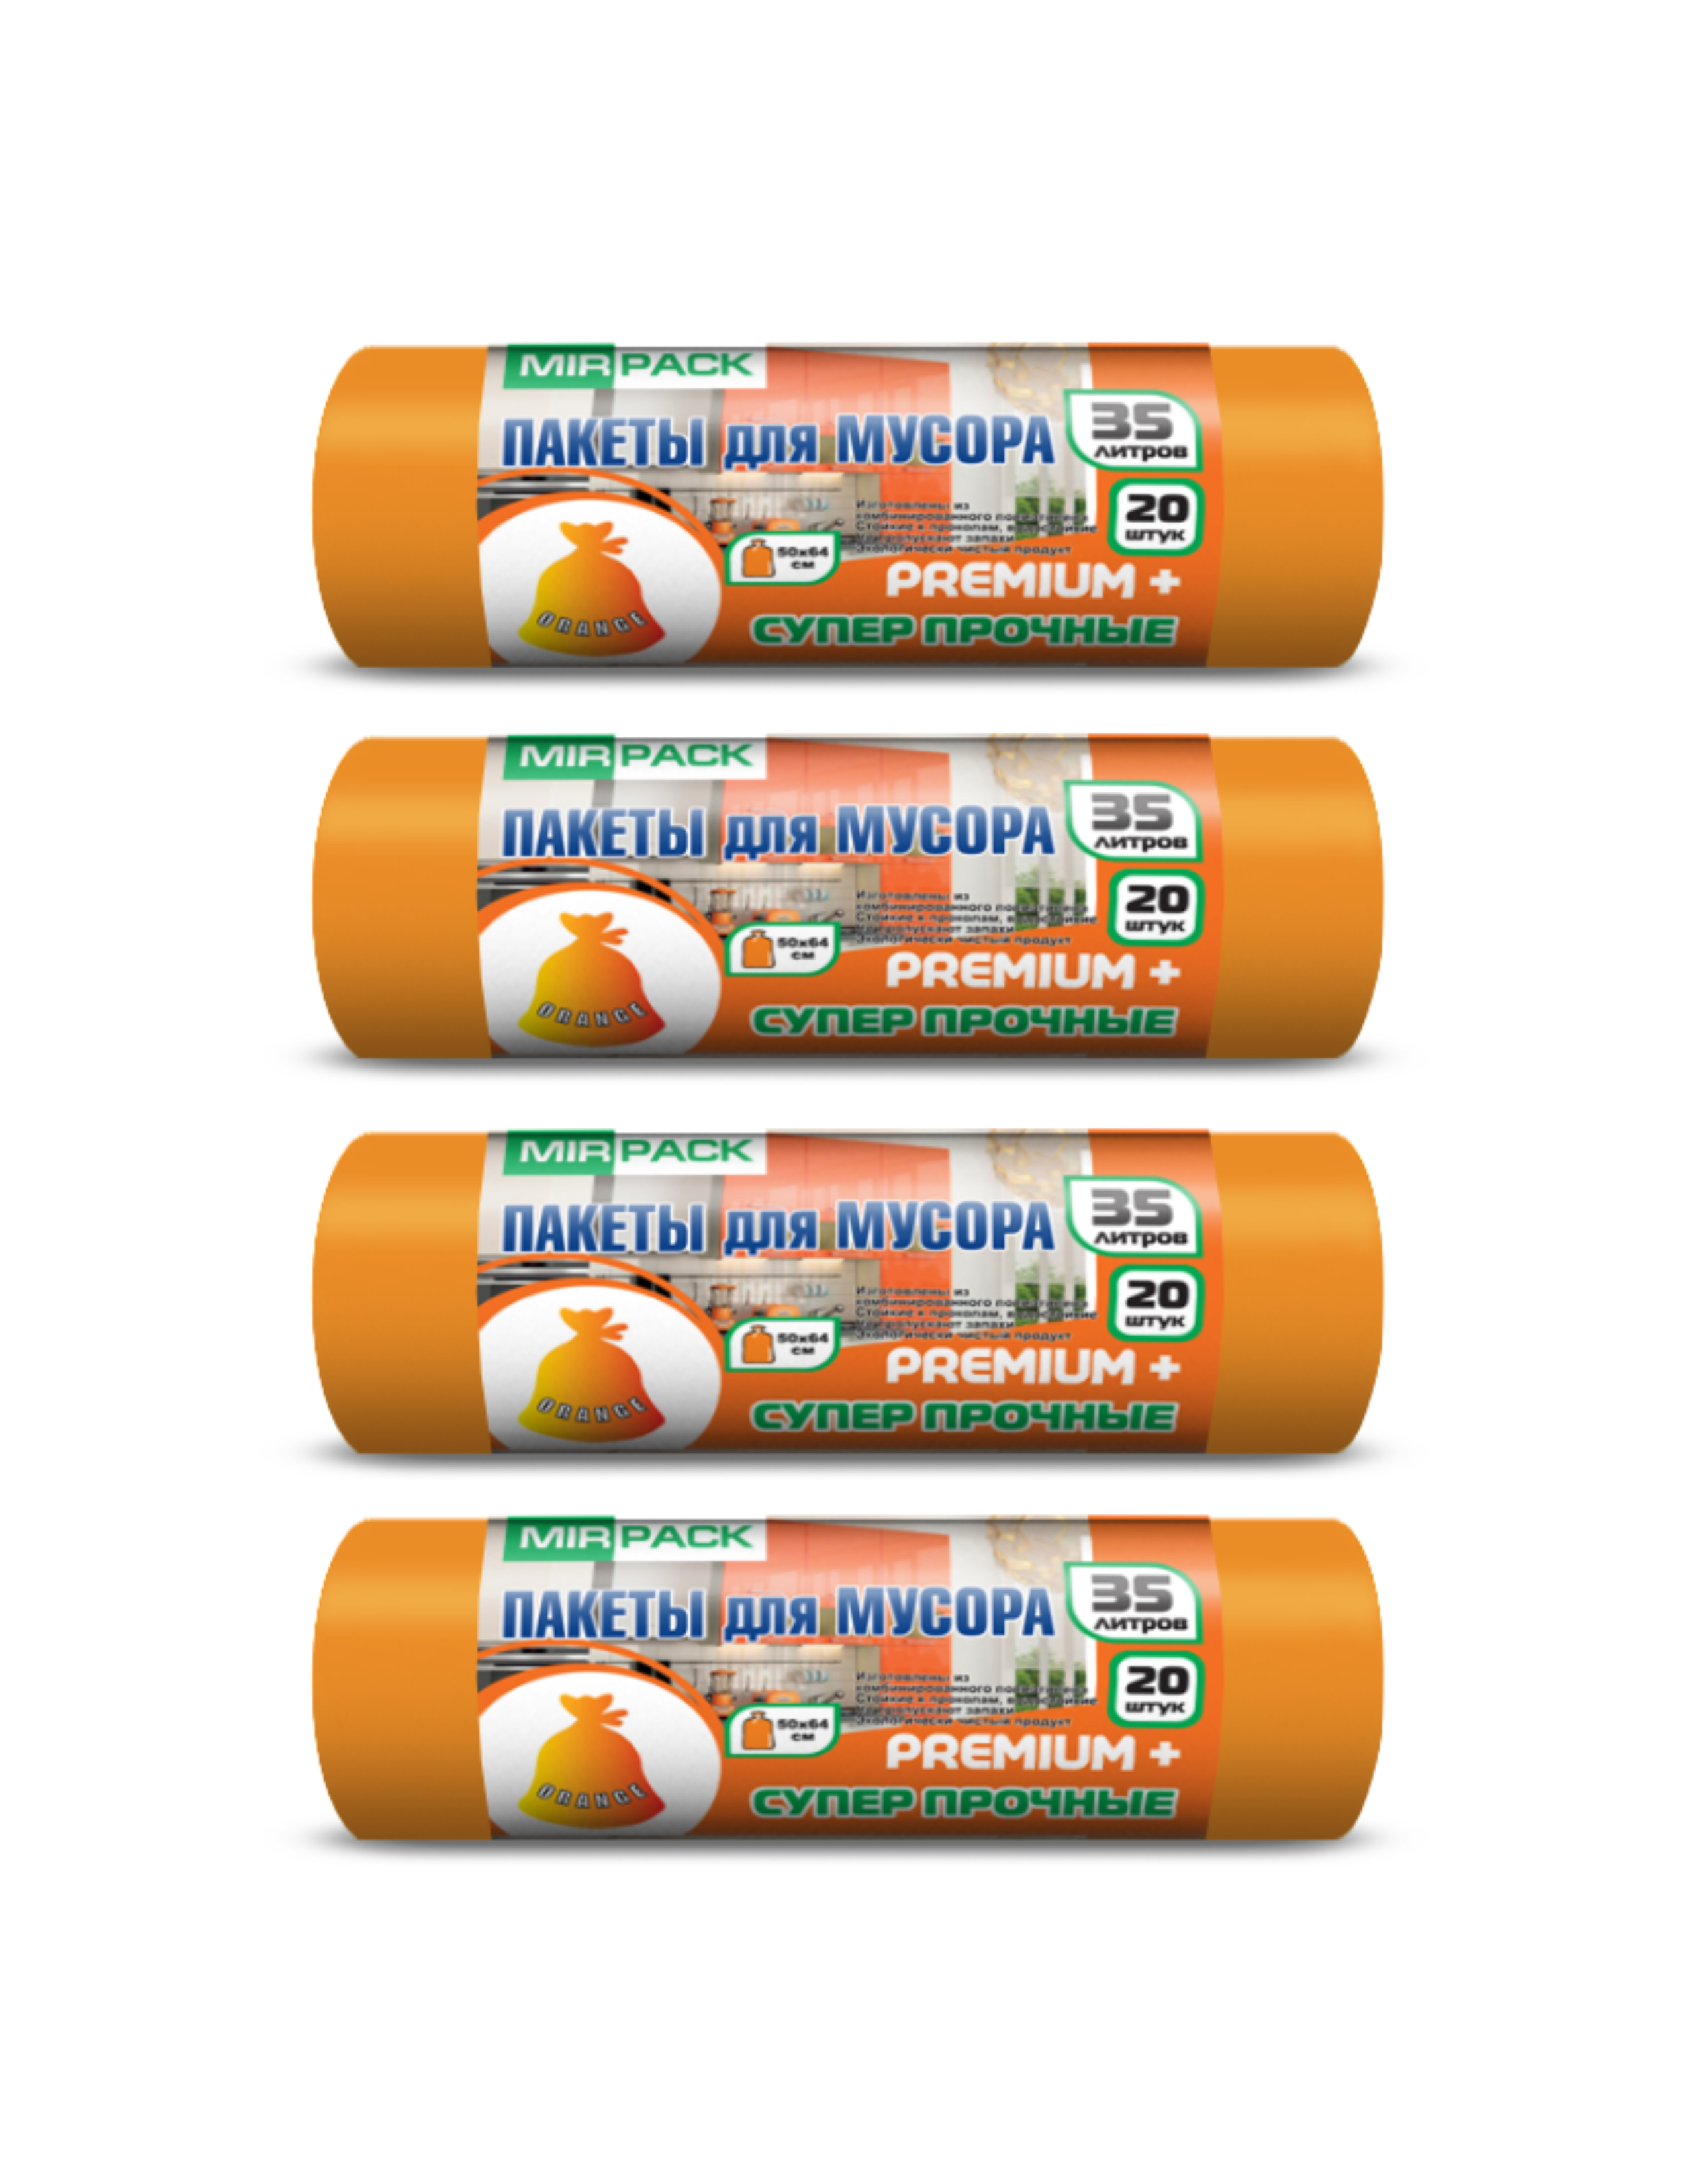 Мешки для мусора MIRPACK Premium+ оранжевые 35 л, 4 упаковки по 20 шт